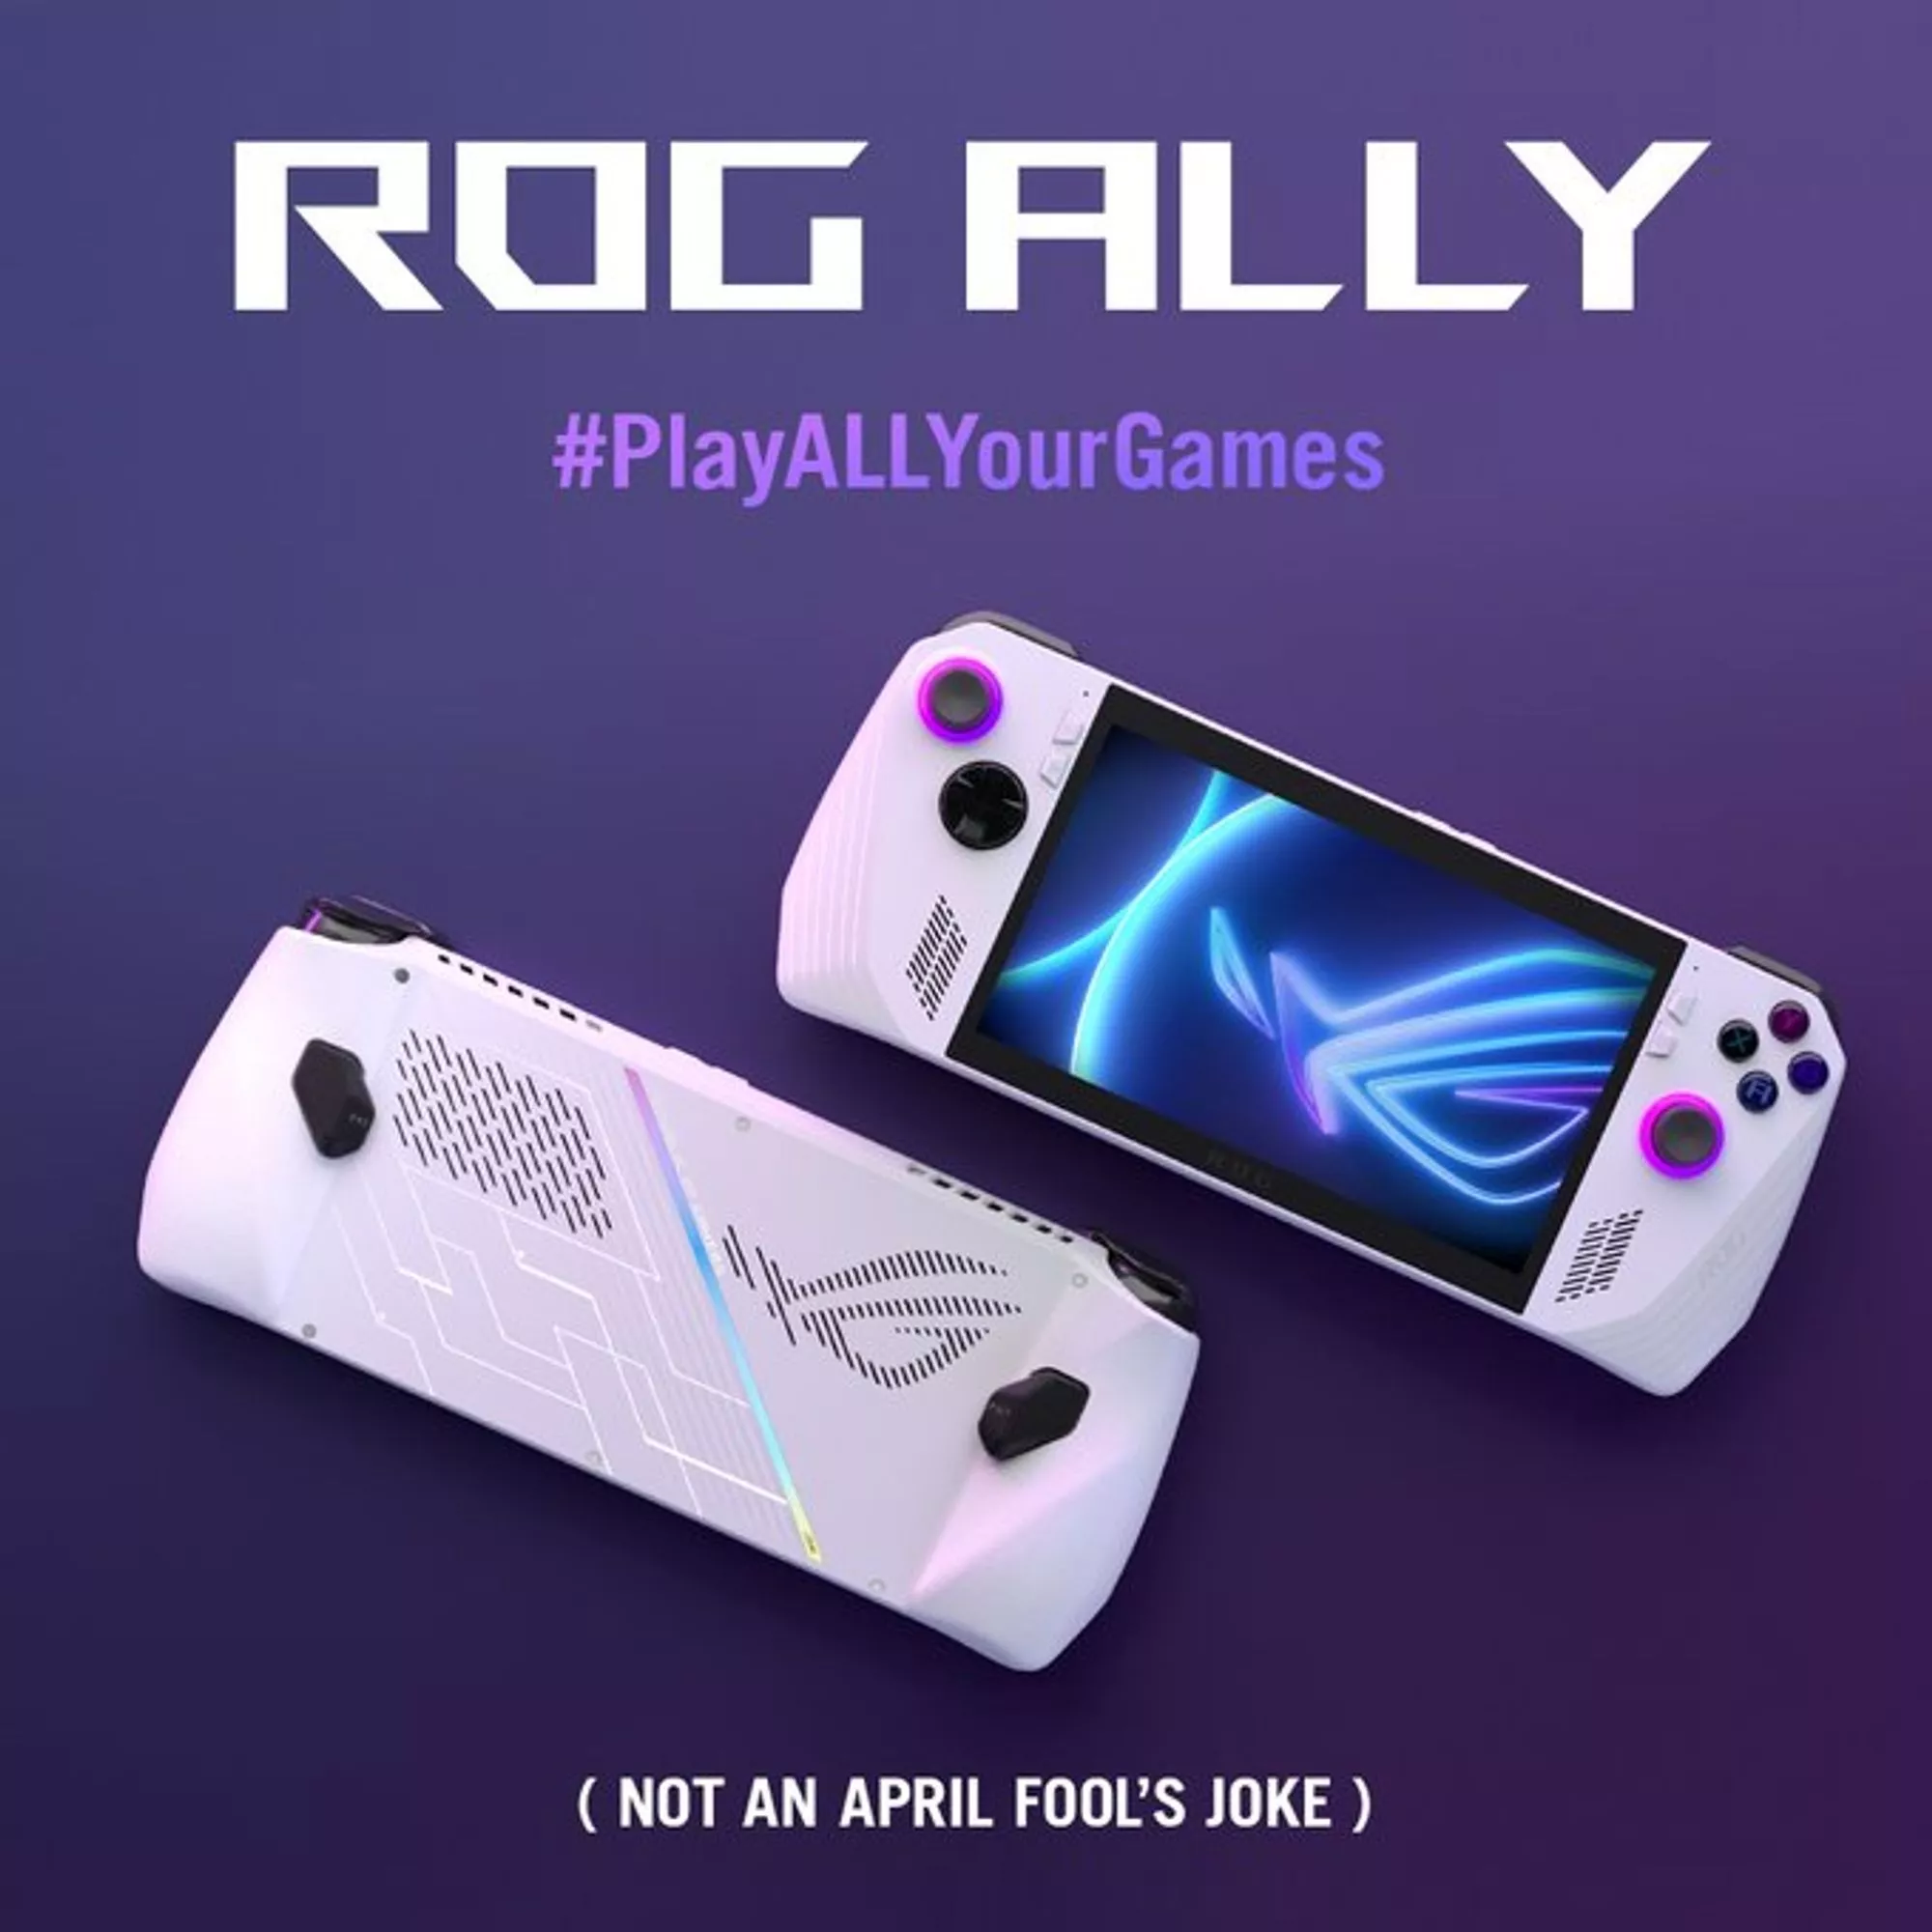 ASUS ra mắt ROG Ally - Máy chơi game cầm tay siêu mạnh và thời trang